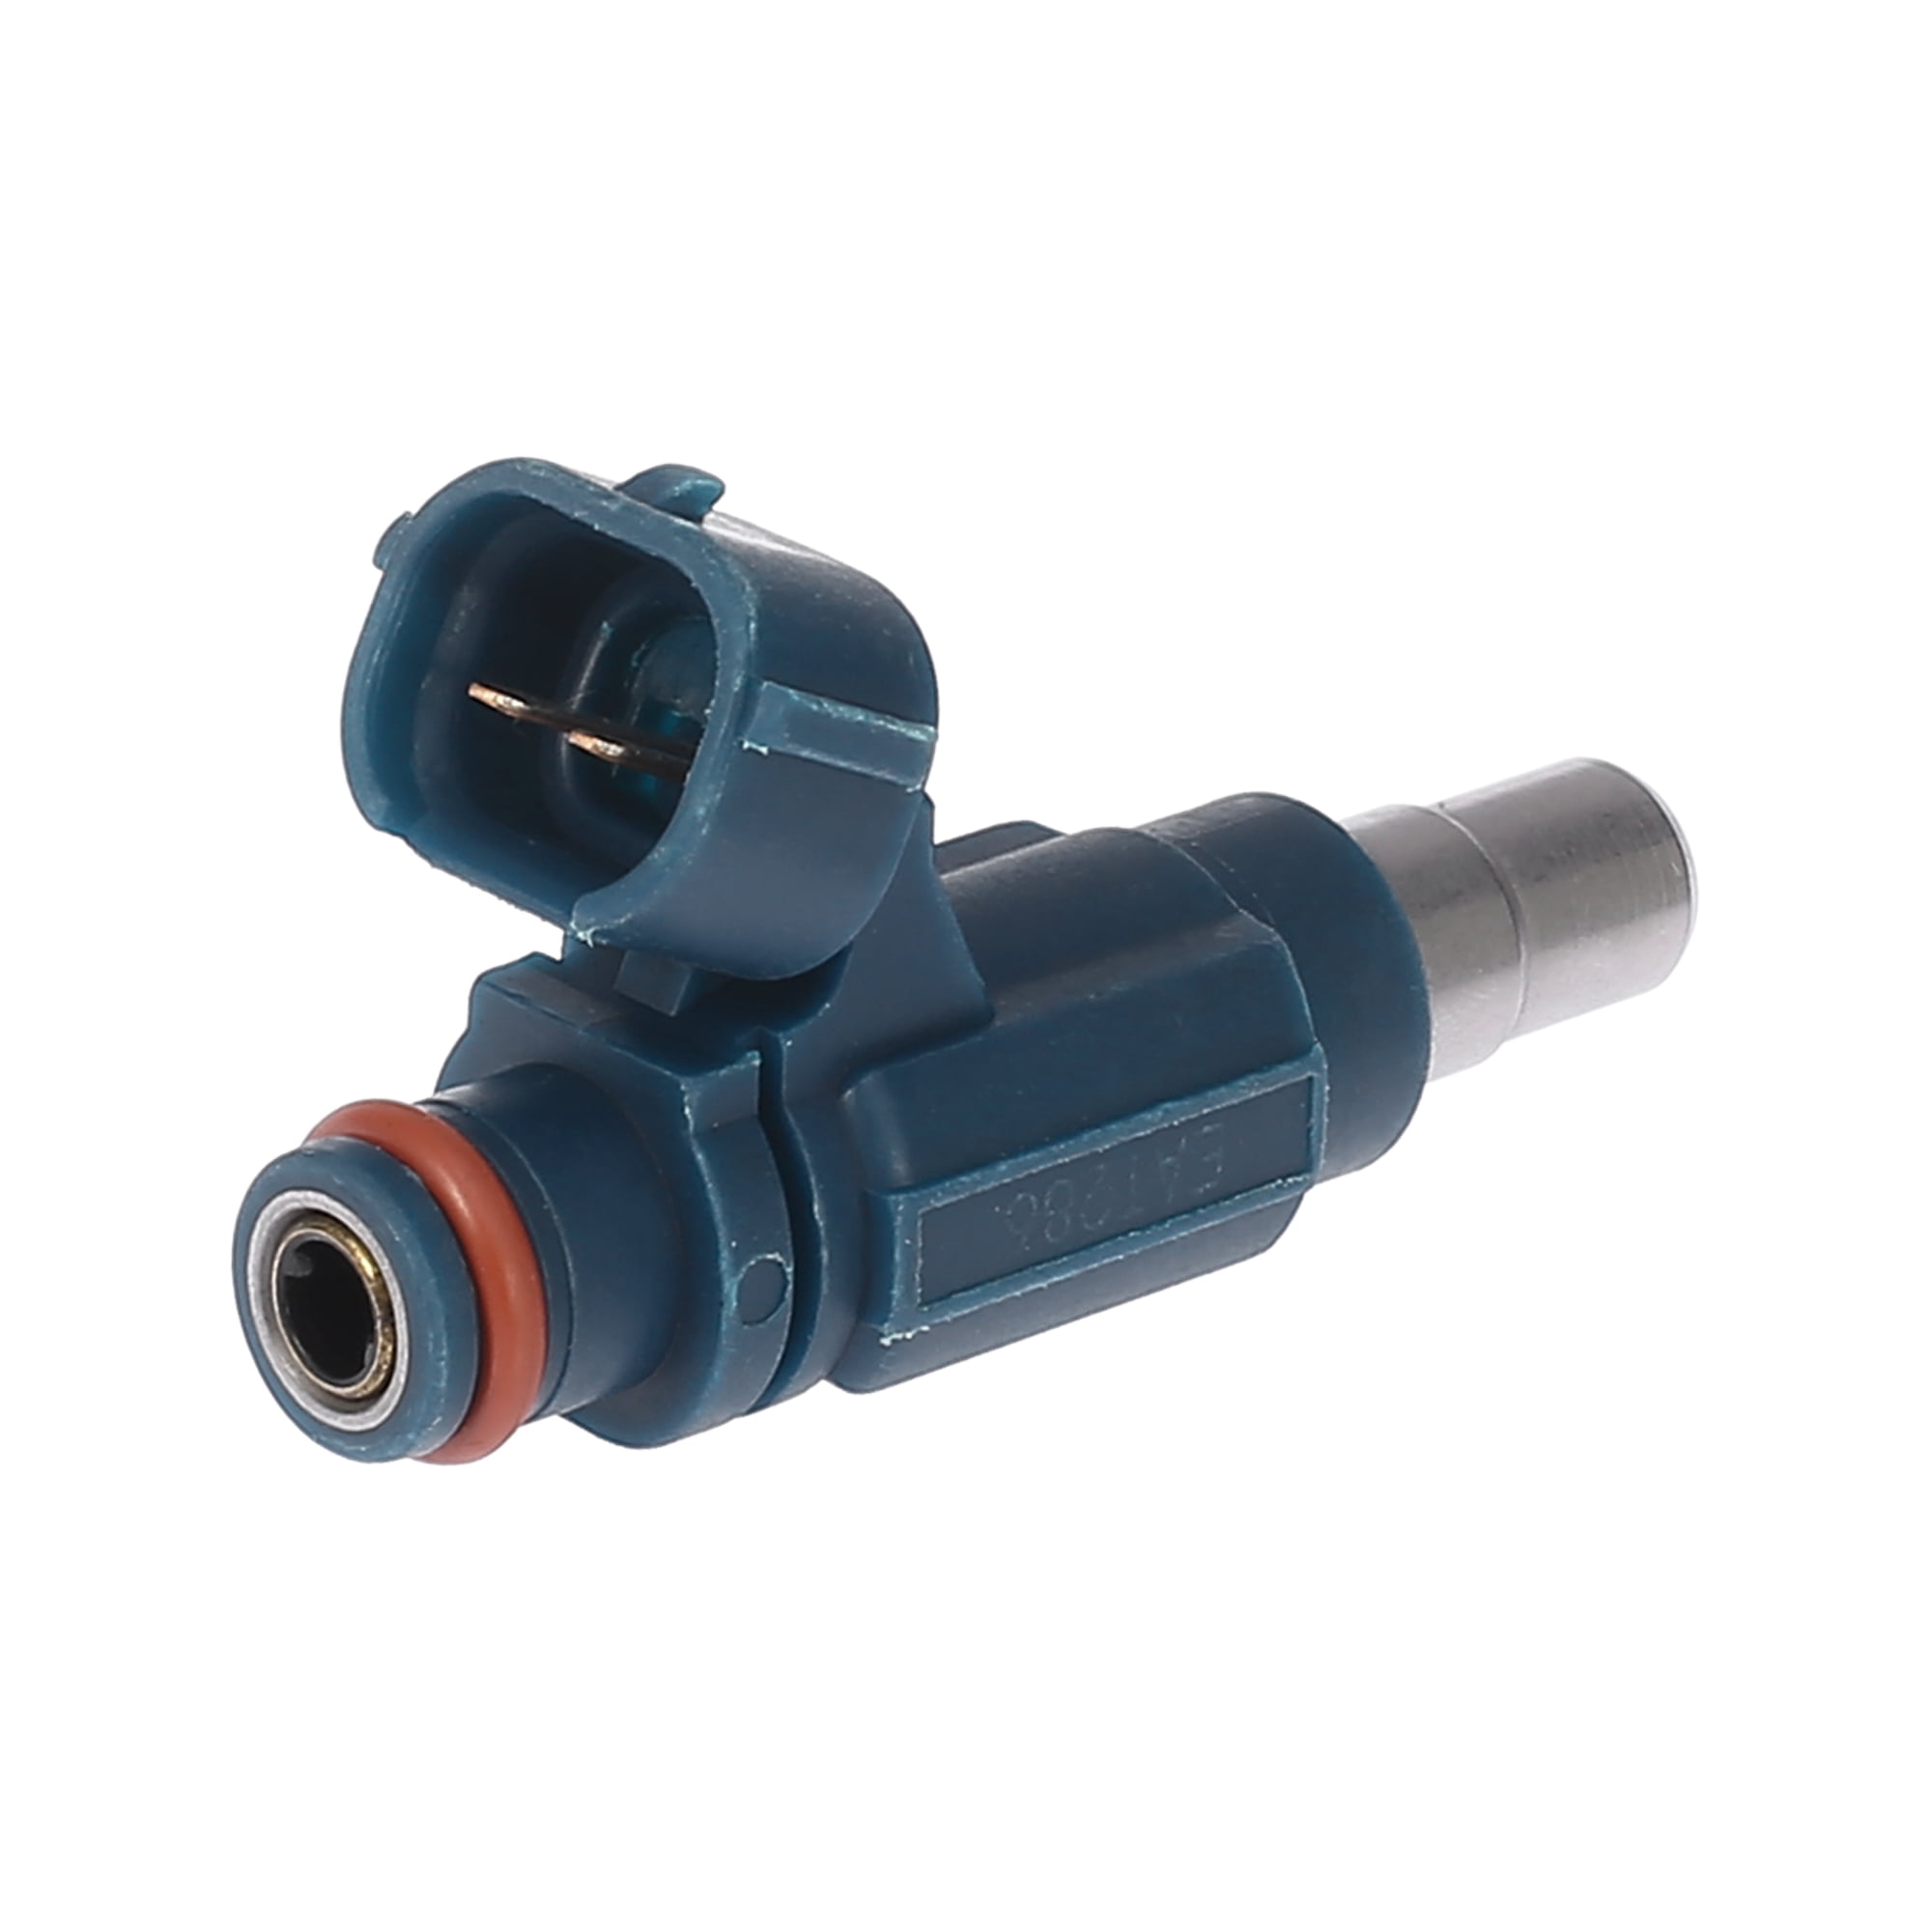 X AUTOHAUX EAT286 Automobile Fuel Injector Nozzle Replacement Part 2 Pins 